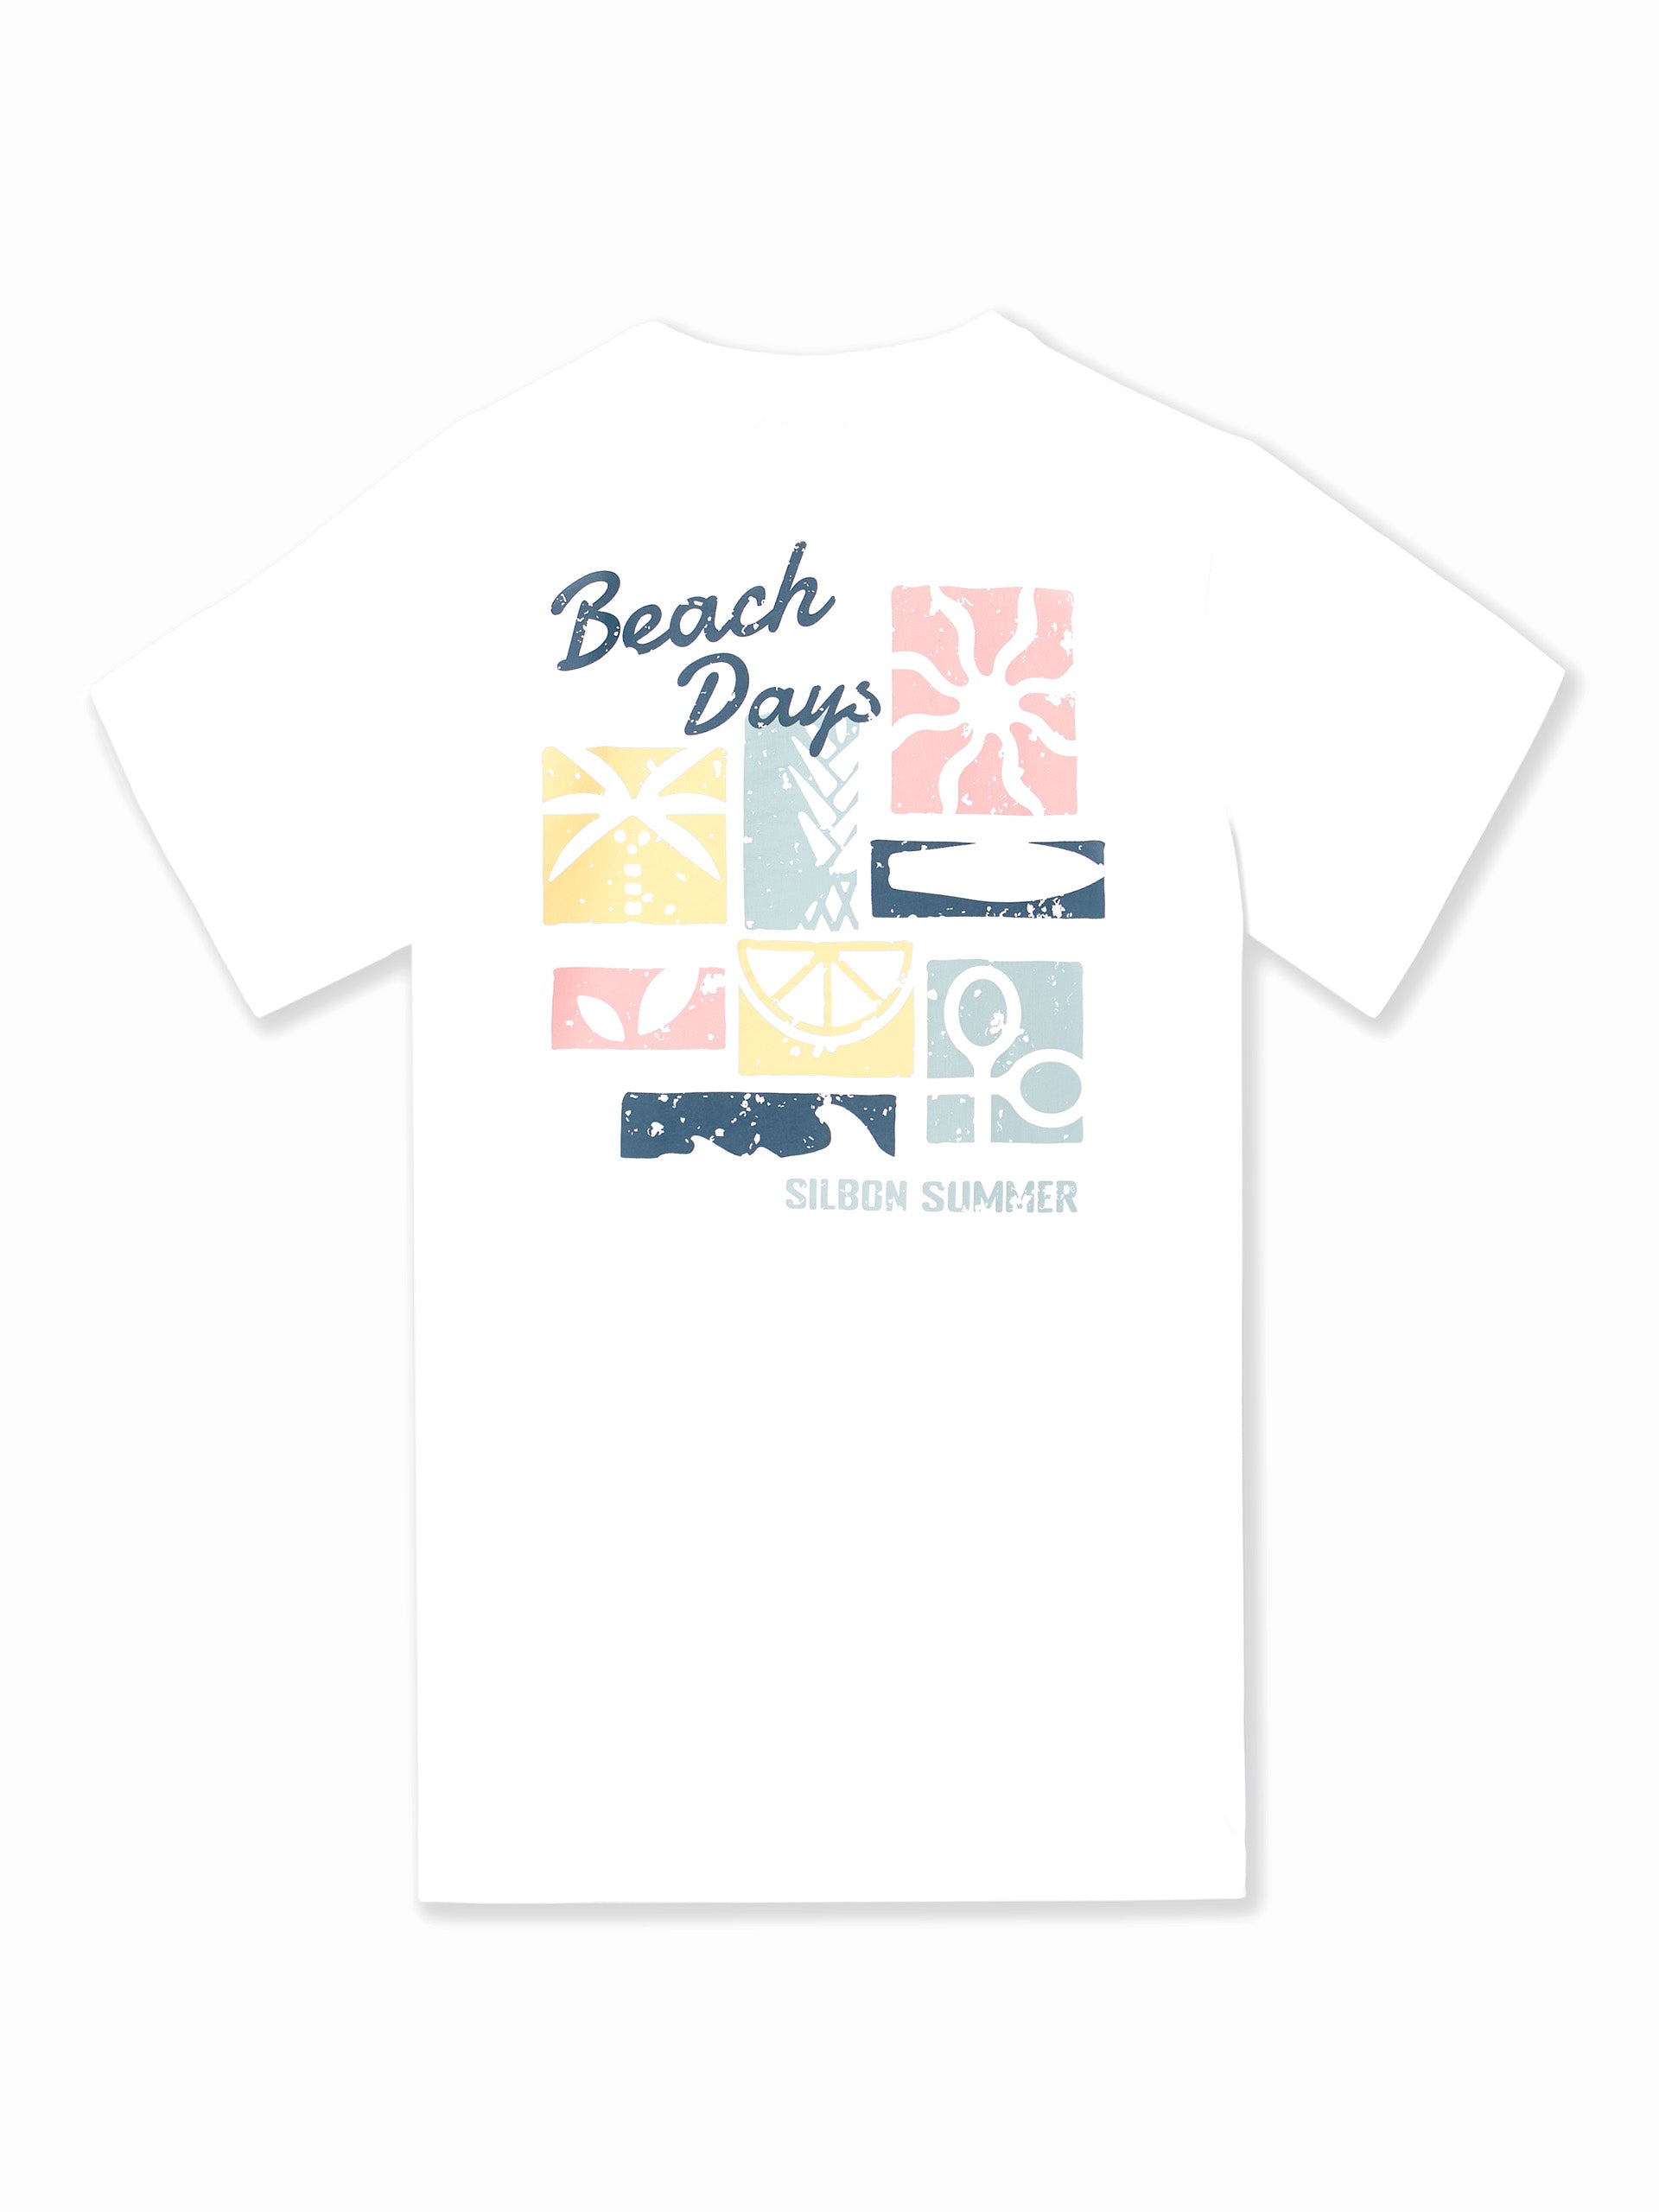 T-shirt blanc pour les jours de plage